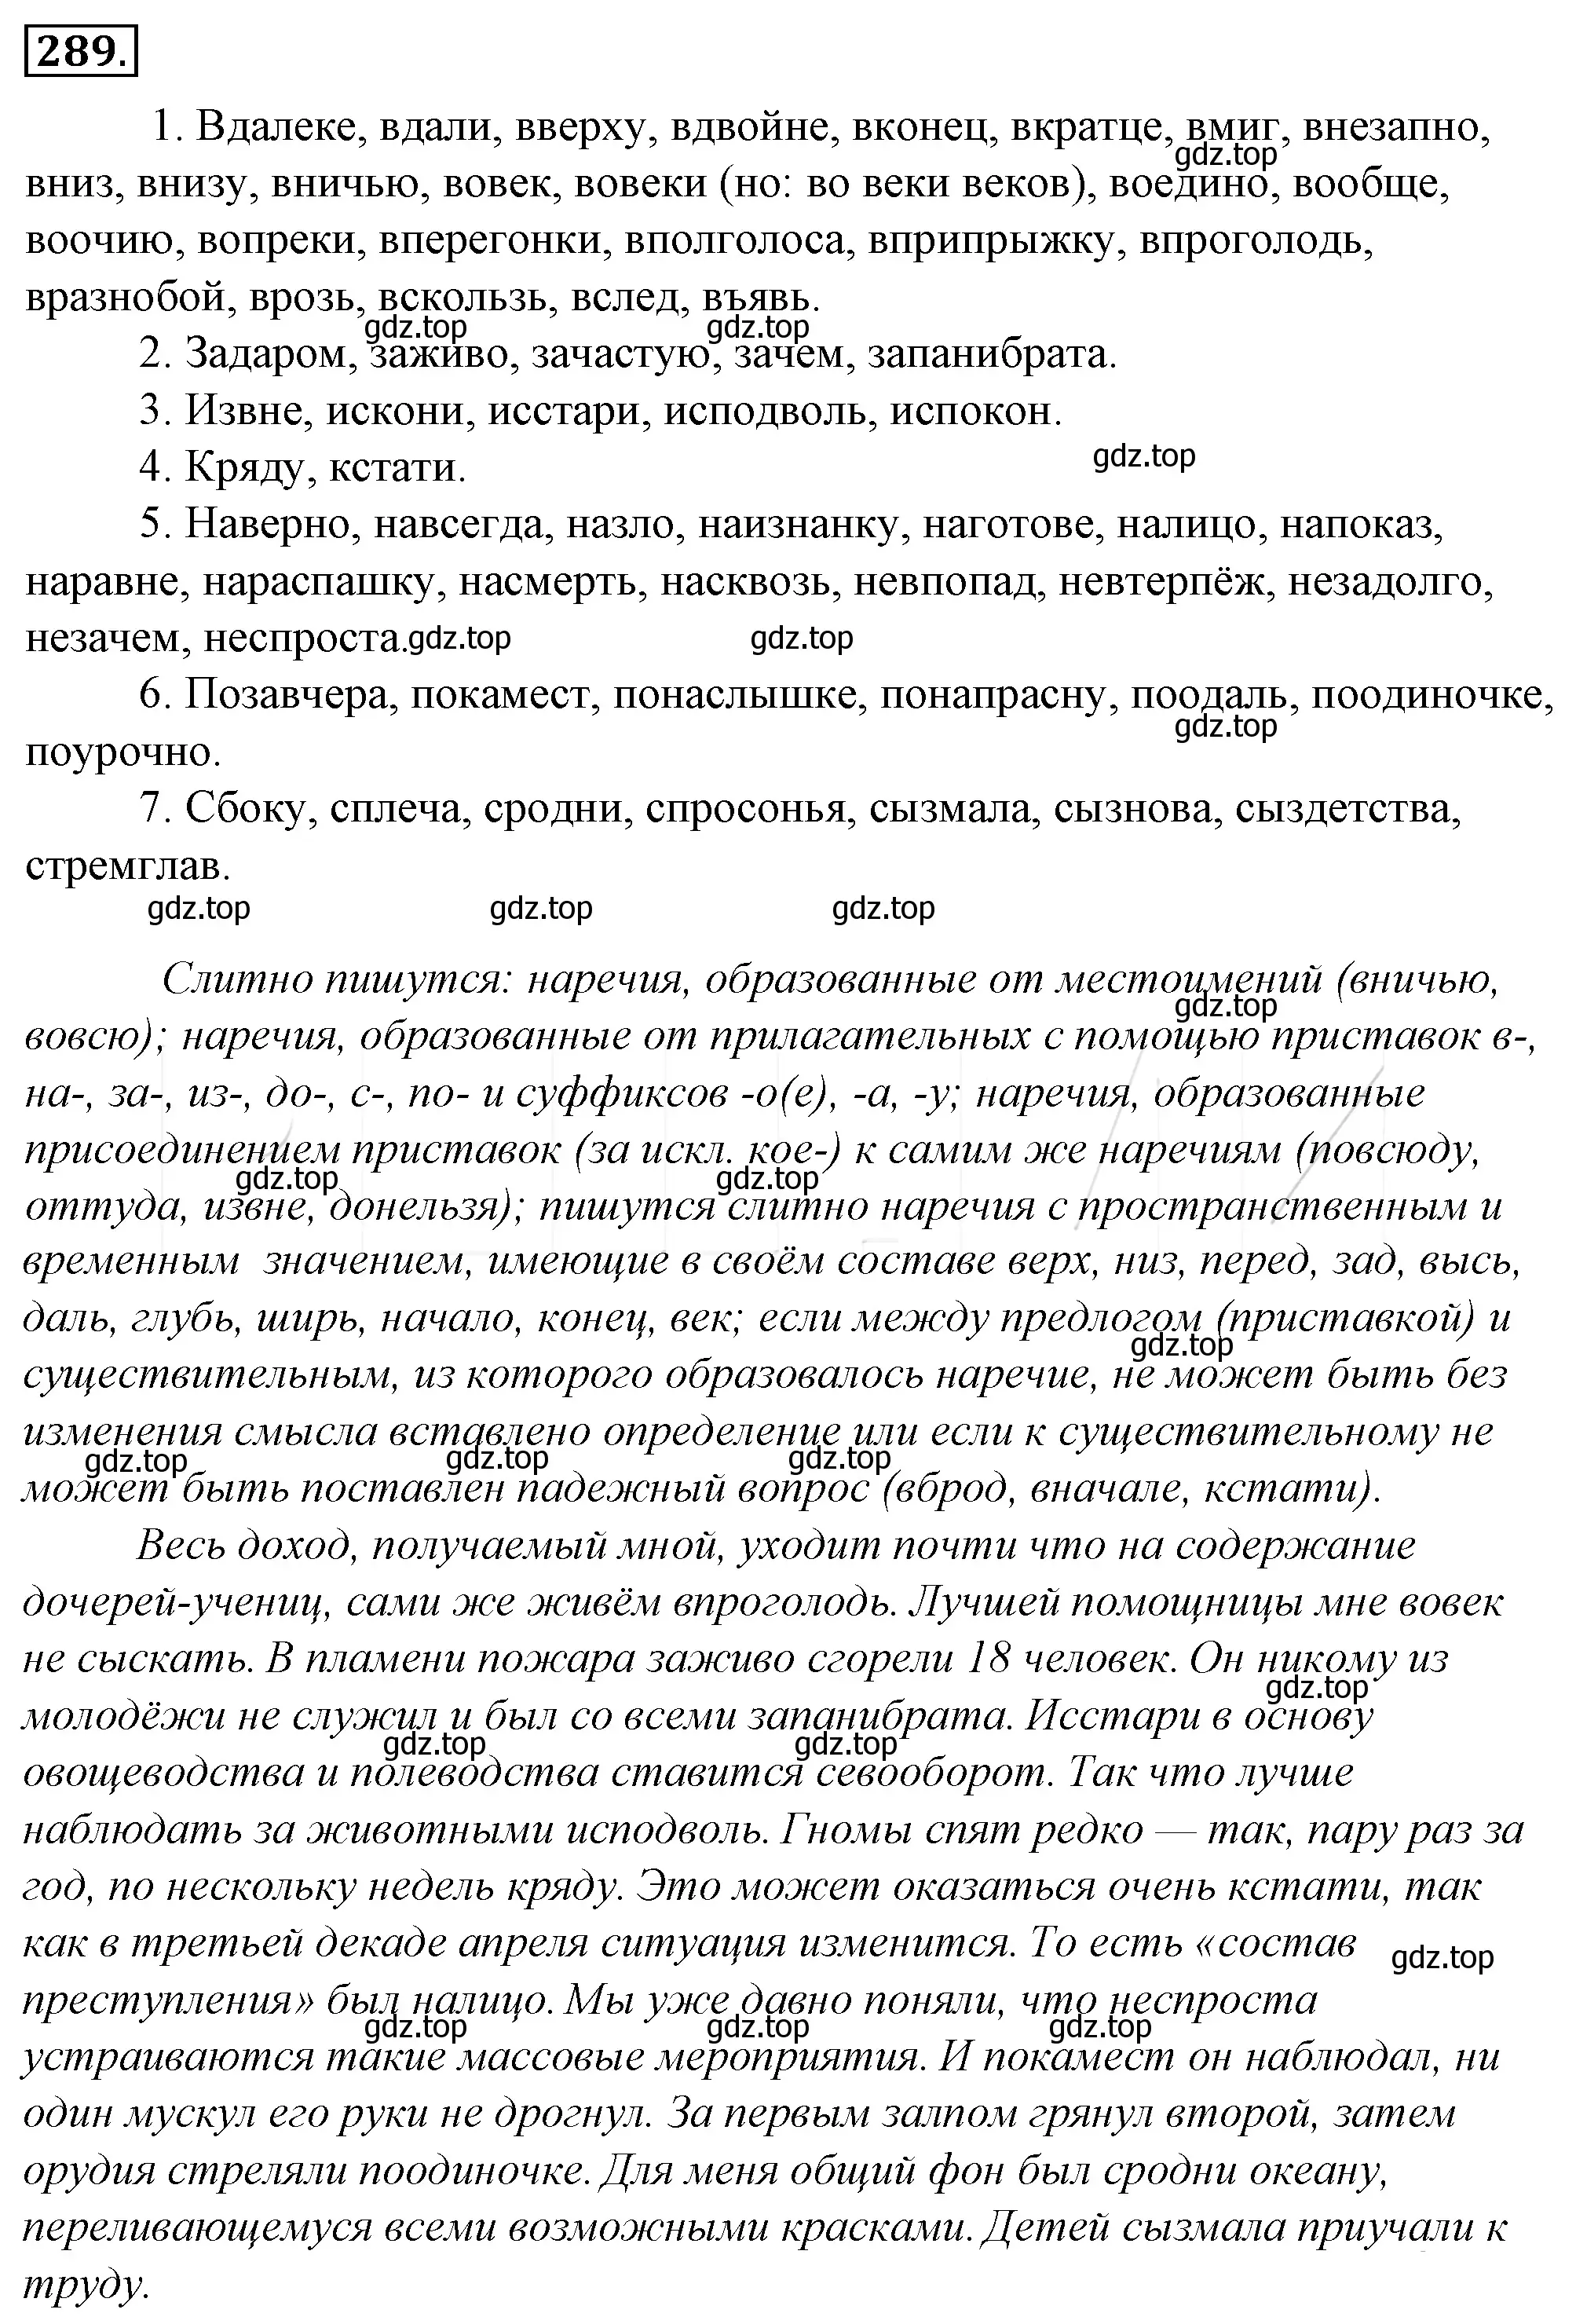 Решение 4. номер 313 (страница 292) гдз по русскому языку 10-11 класс Гольцова, Шамшин, учебник 1 часть